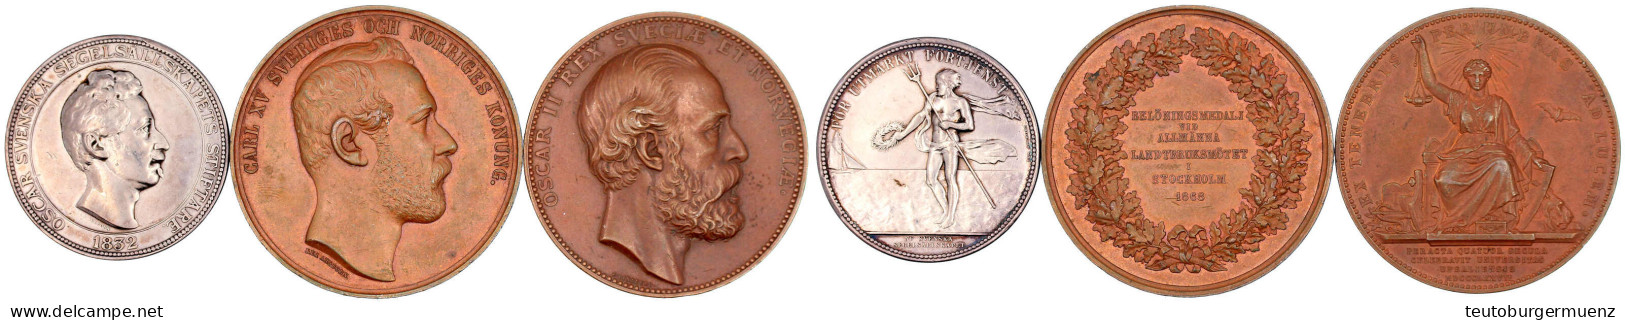 3 Medaillen: Oscar I. Silbermed. "1832" (spätere Prägung) Von Ahlborn, Regatta, 44 Mm, 41,89 G; Carl XV. Bronzemed. 1868 - Sweden